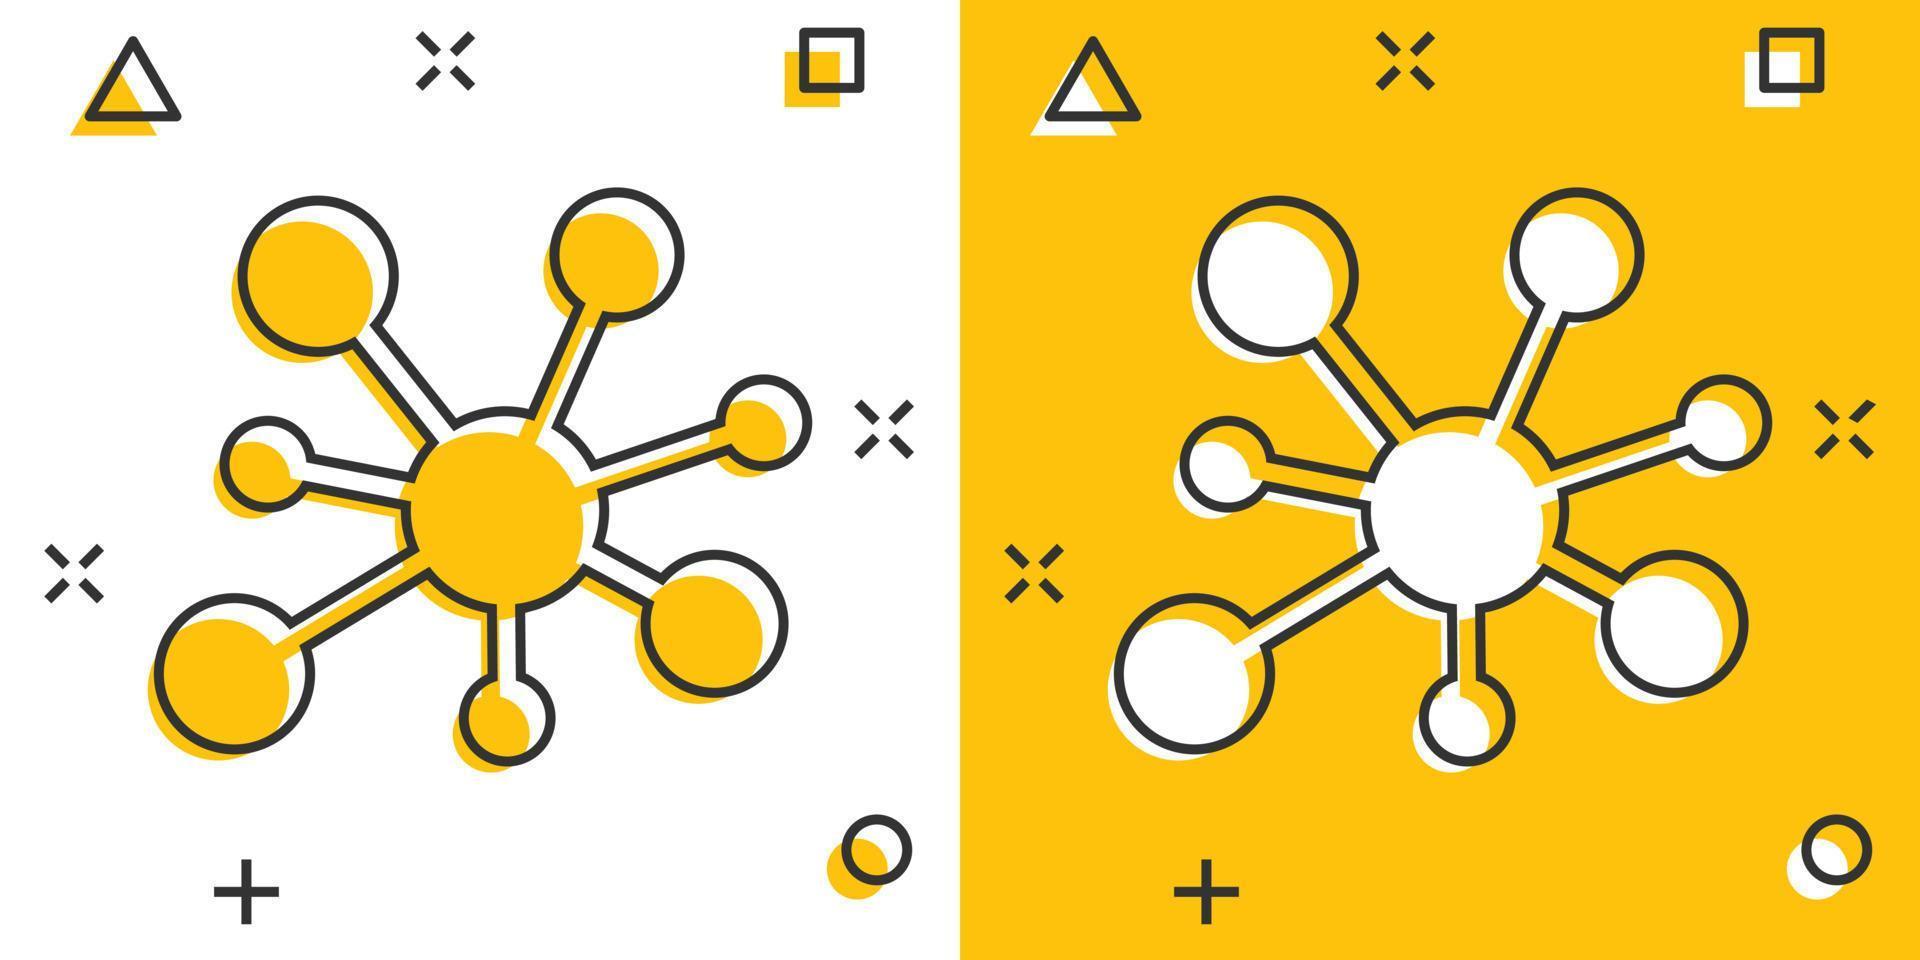 icono de signo de conexión de red central en estilo cómico. ilustración de dibujos animados de vector de molécula de adn sobre fondo blanco aislado. efecto de salpicadura de concepto de negocio de átomo.